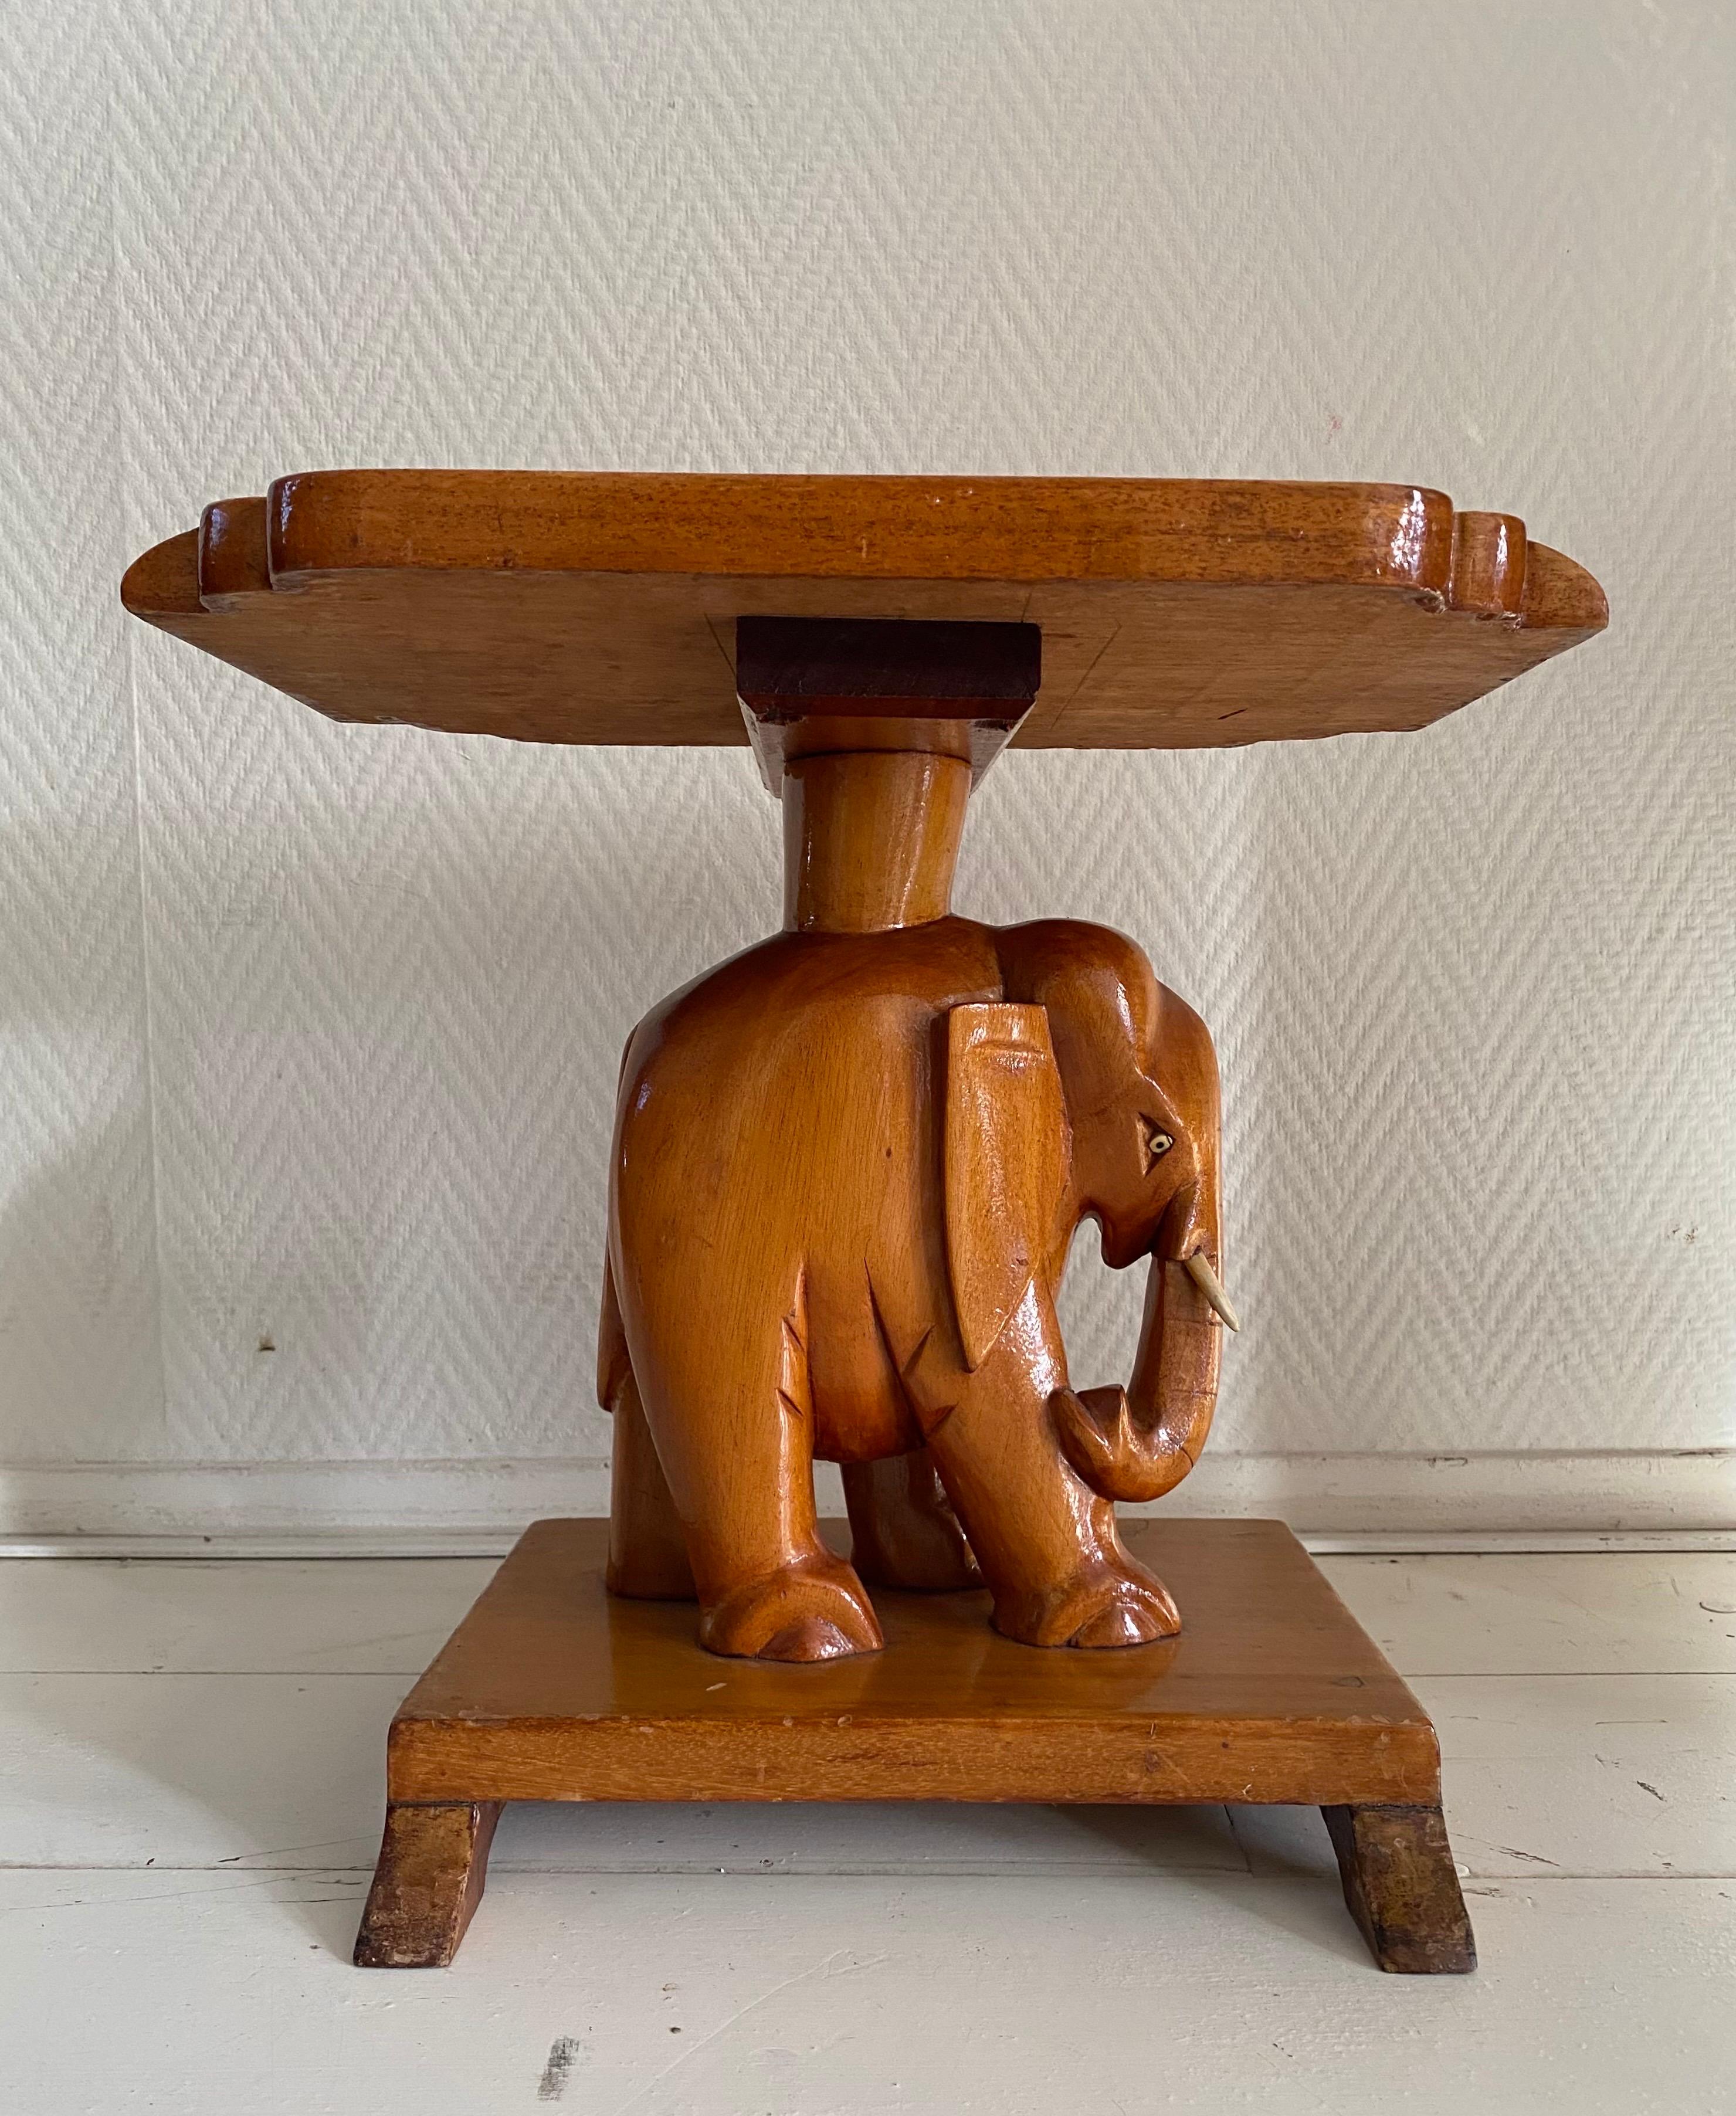 Wunderbar  Moderner und handgeschnitzter Elefanten-Beistelltisch aus der Jahrhundertmitte.
Der Tisch wurde aus Teakholz gefertigt und lackiert.  Es bleibt in einem guten Vintage-Zustand mit einigen Alters- und Gebrauchsspuren, siehe Fotos. Toller